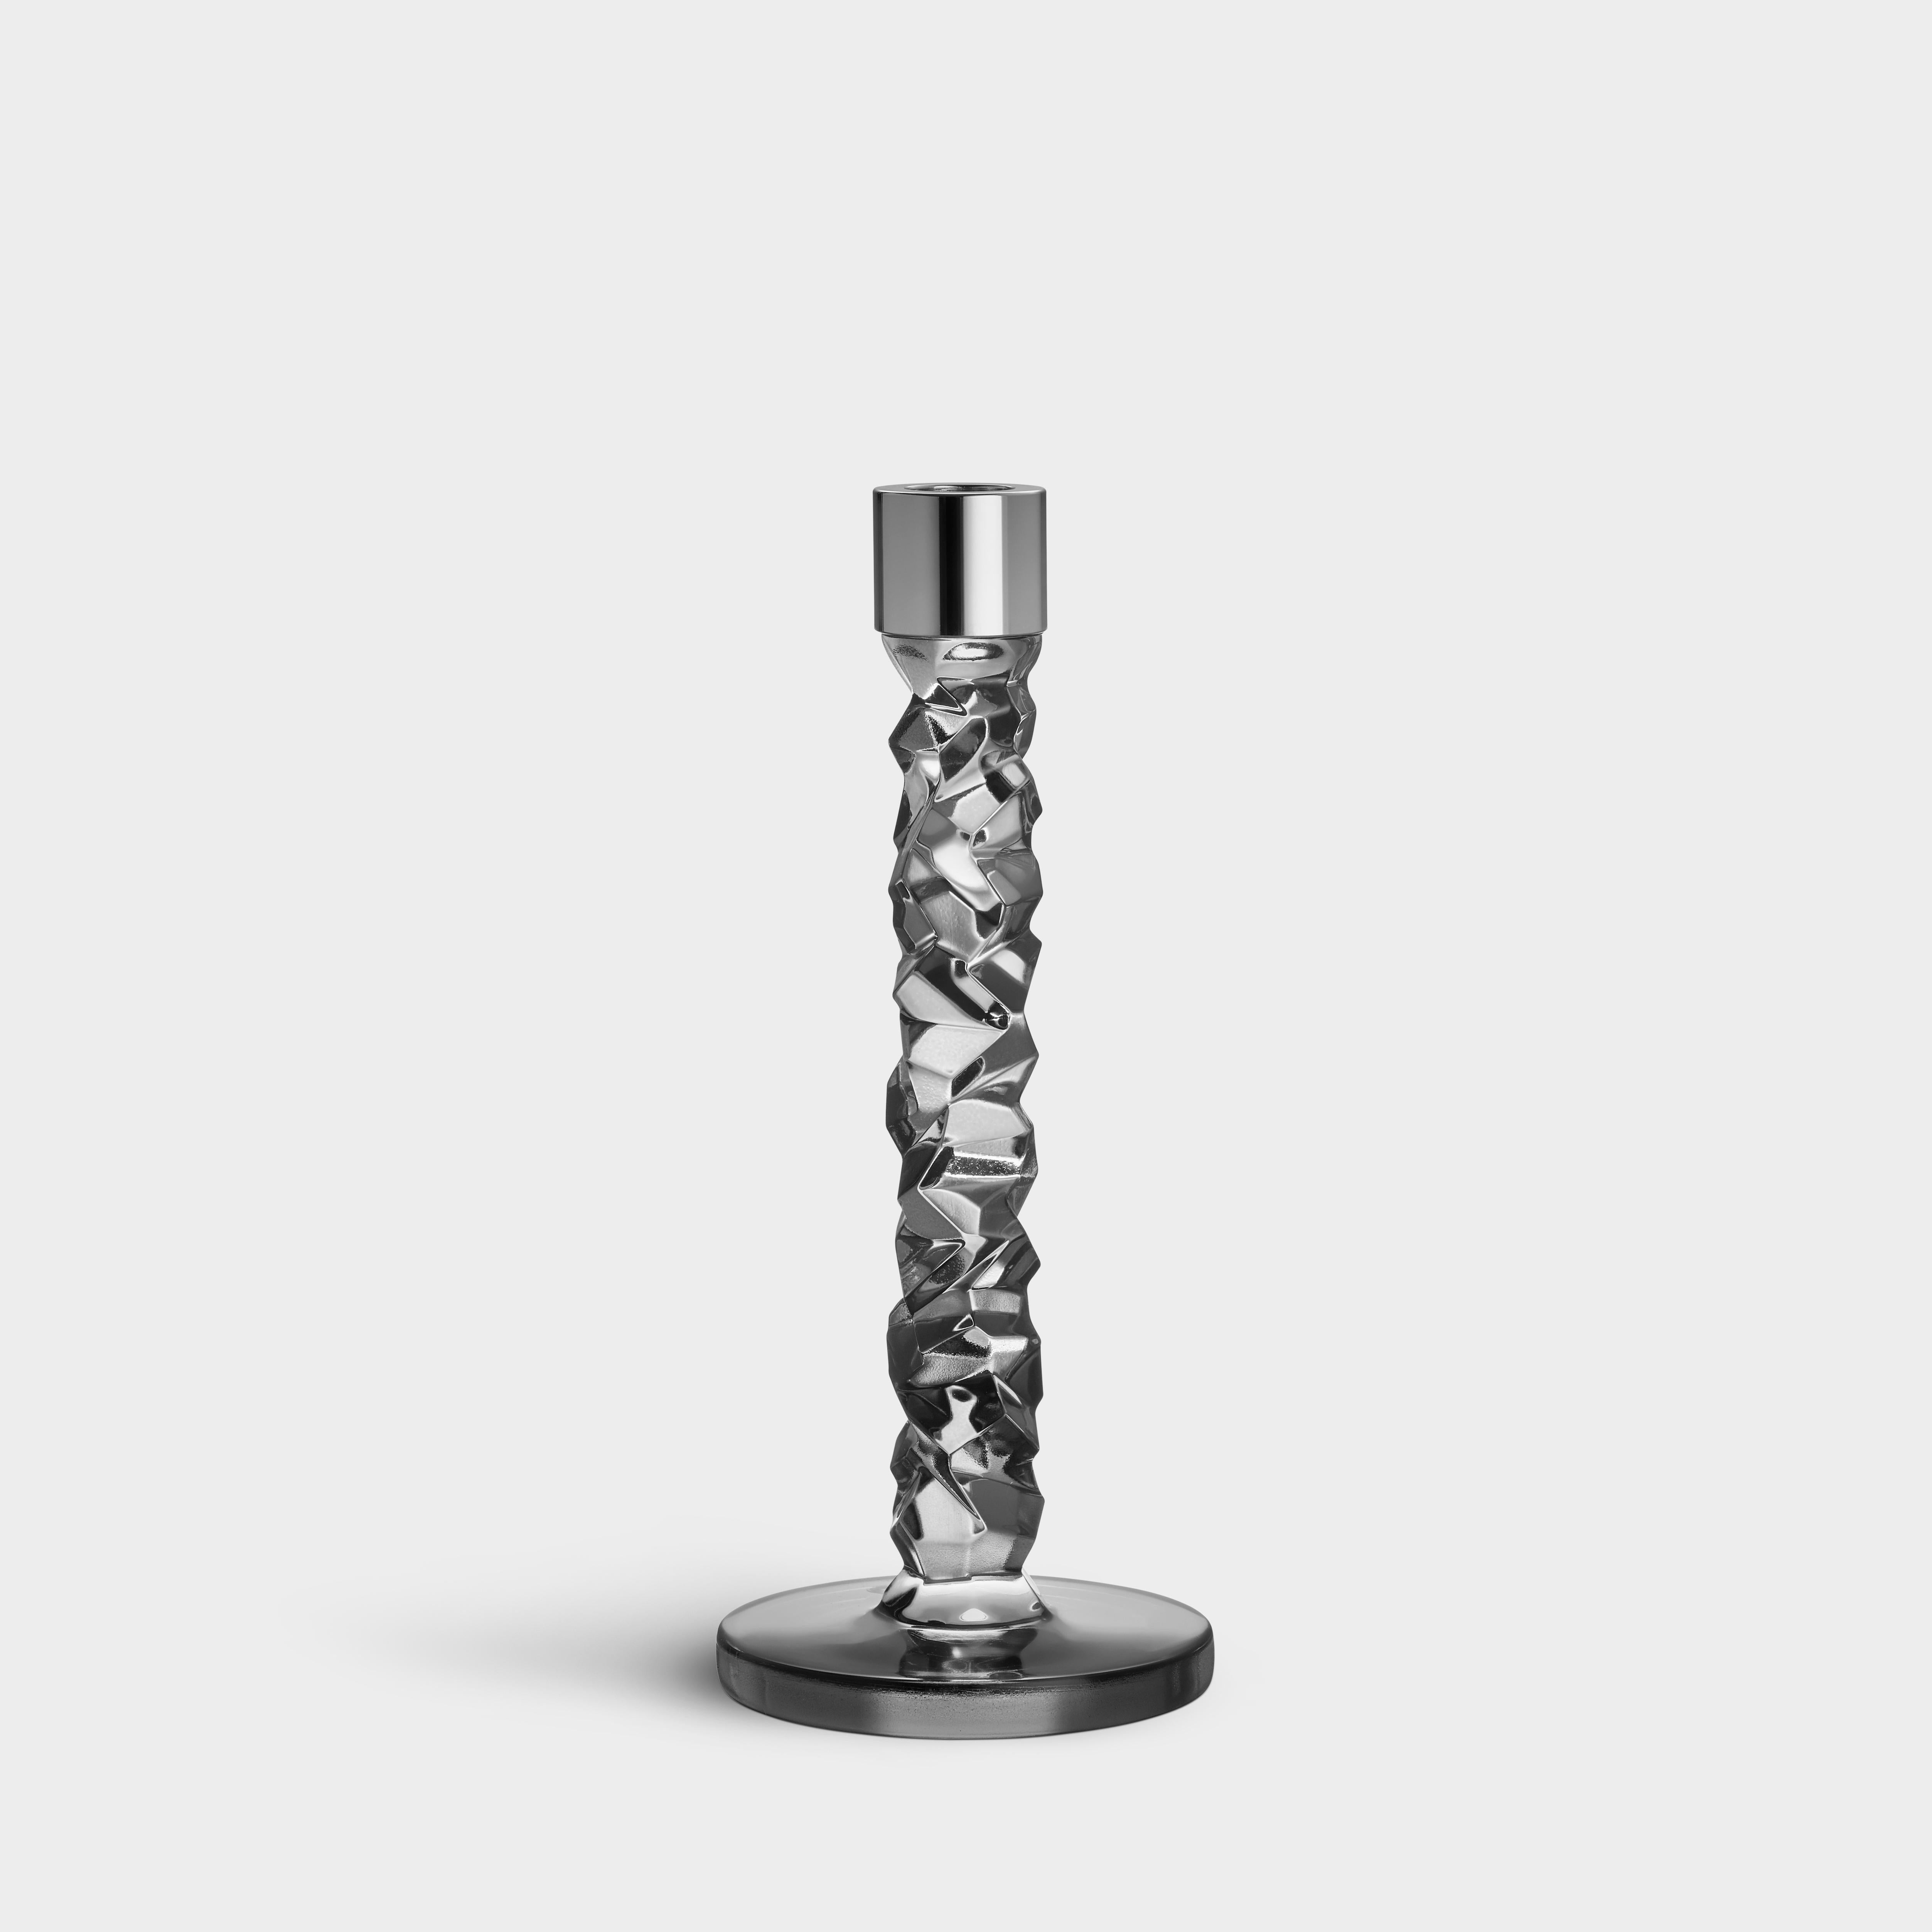 La collection Carat est basée sur une interprétation contemporaine du verre taillé traditionnel qui a fait la renommée mondiale d'Orrefors. La géométrie irrégulière produit de magnifiques reflets de lumière dans le cristal. Le chandelier moyen de